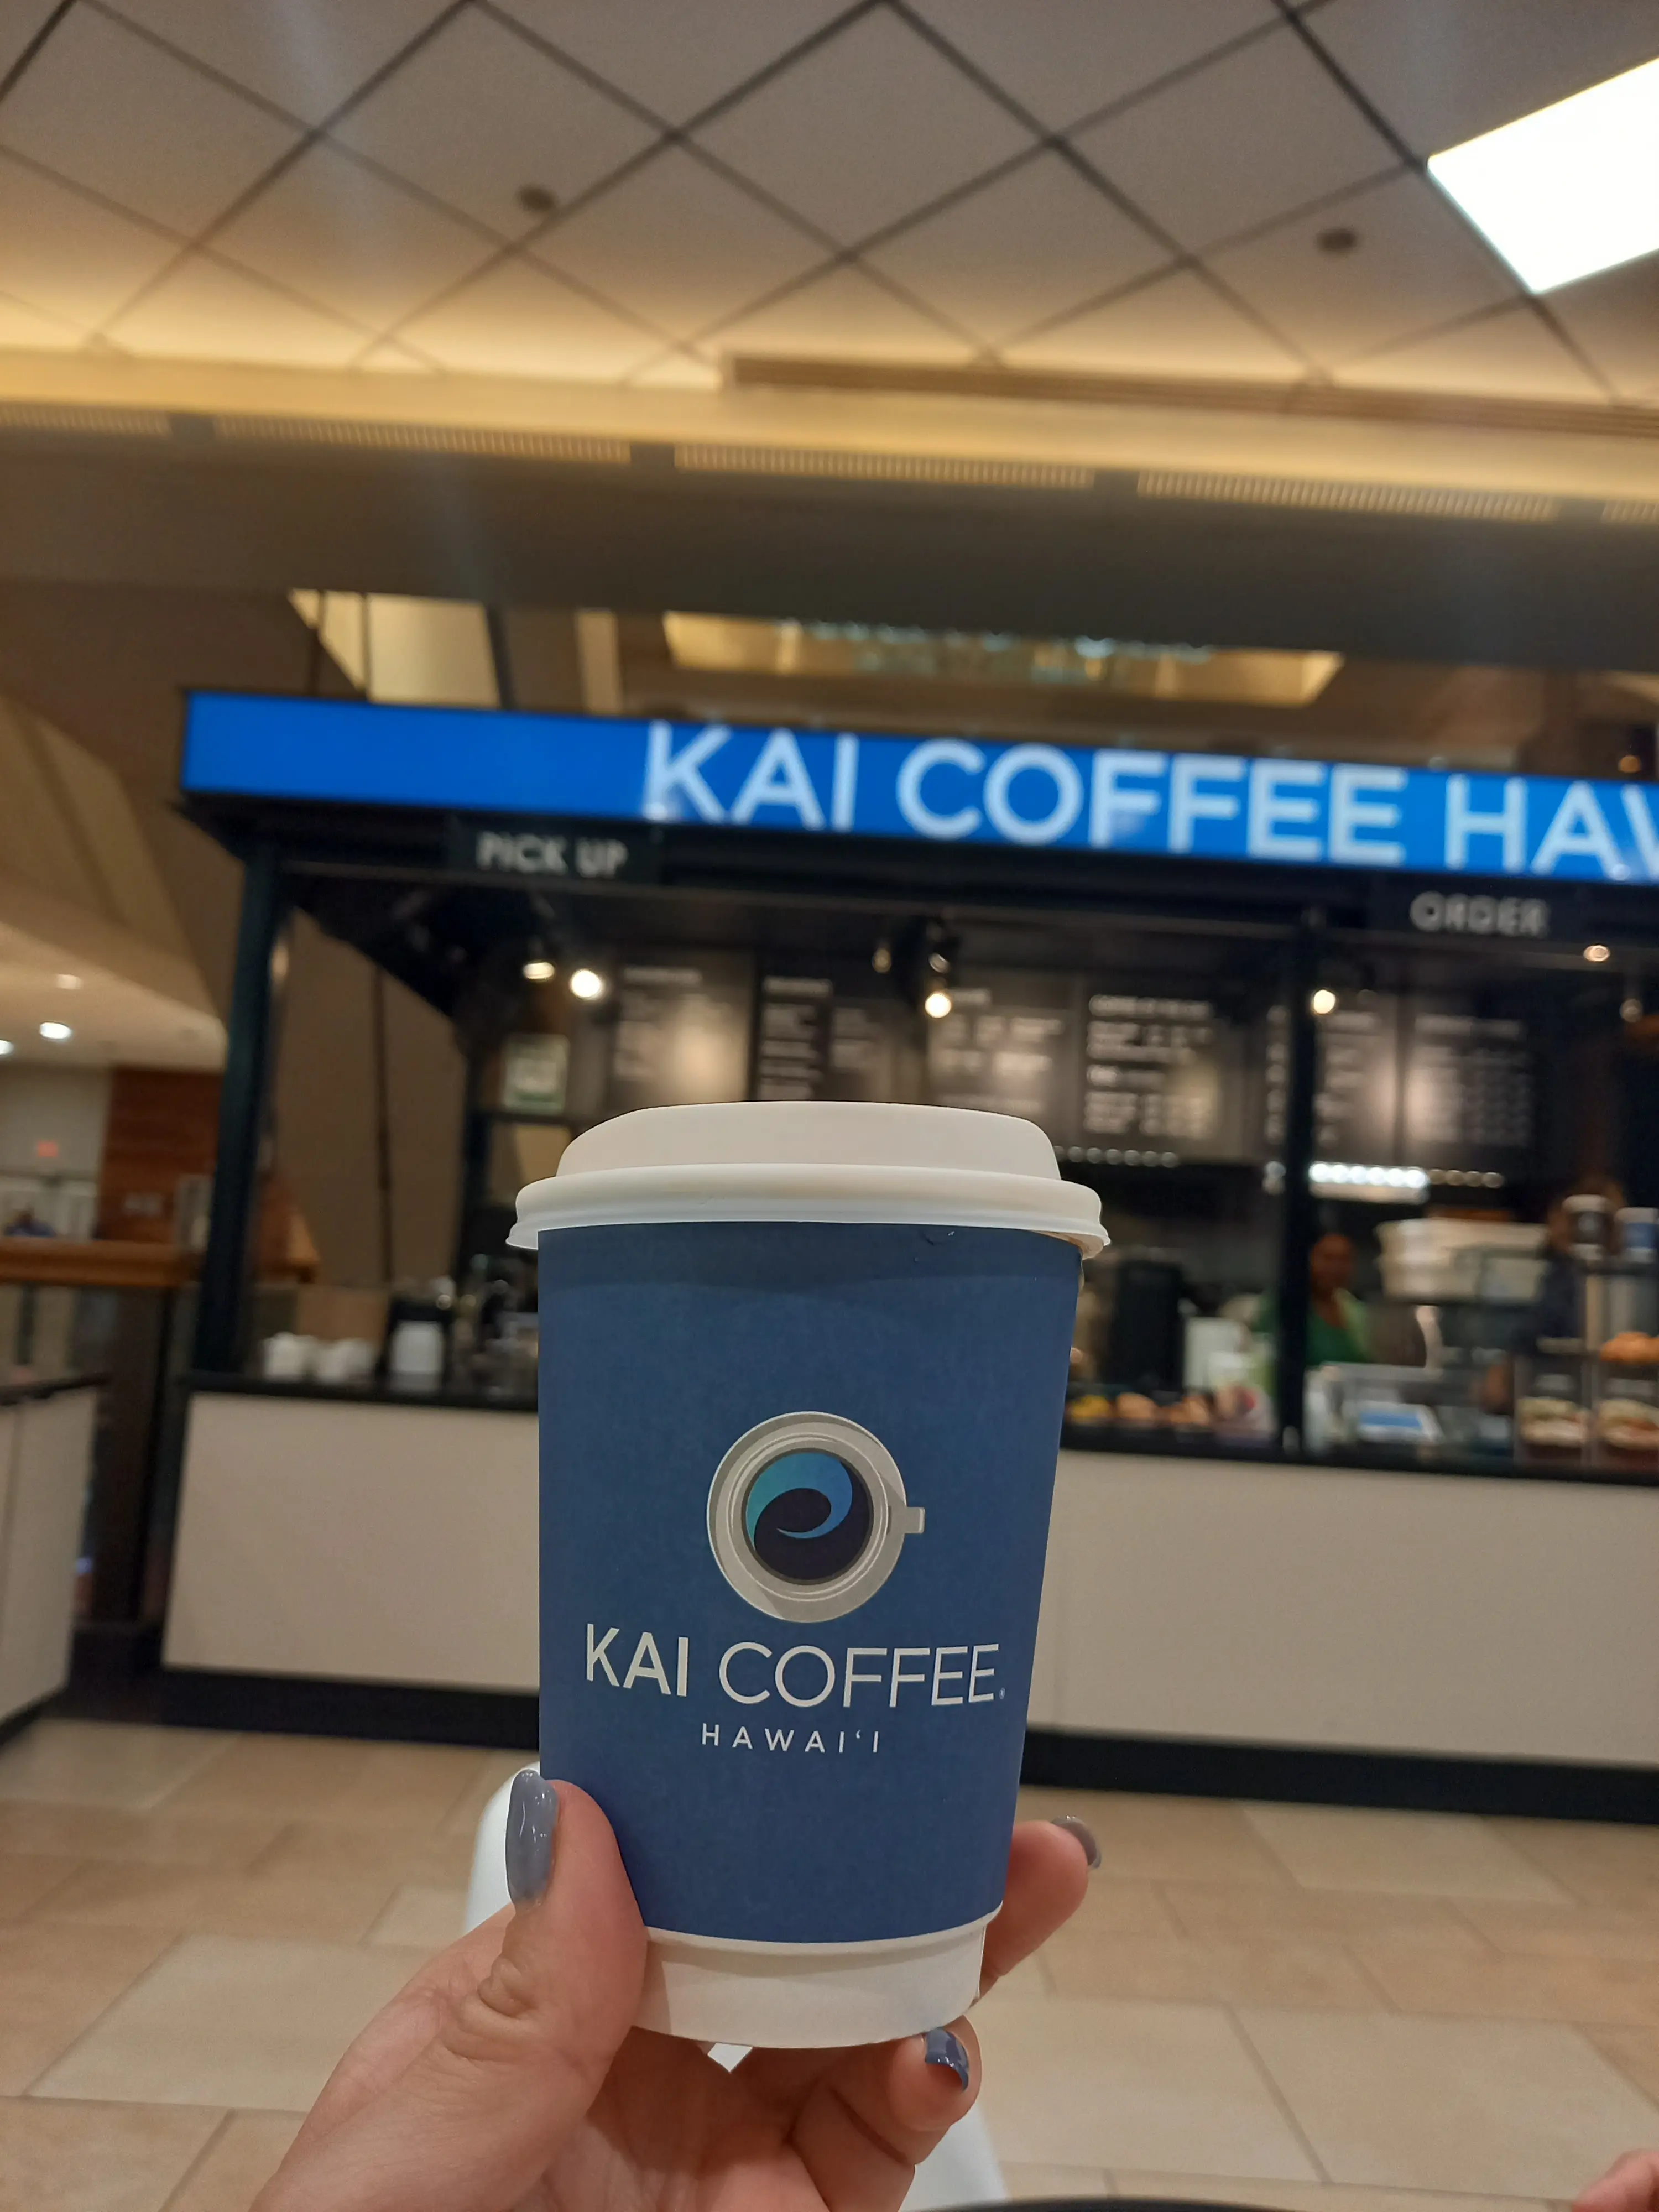 KAI COFFEE